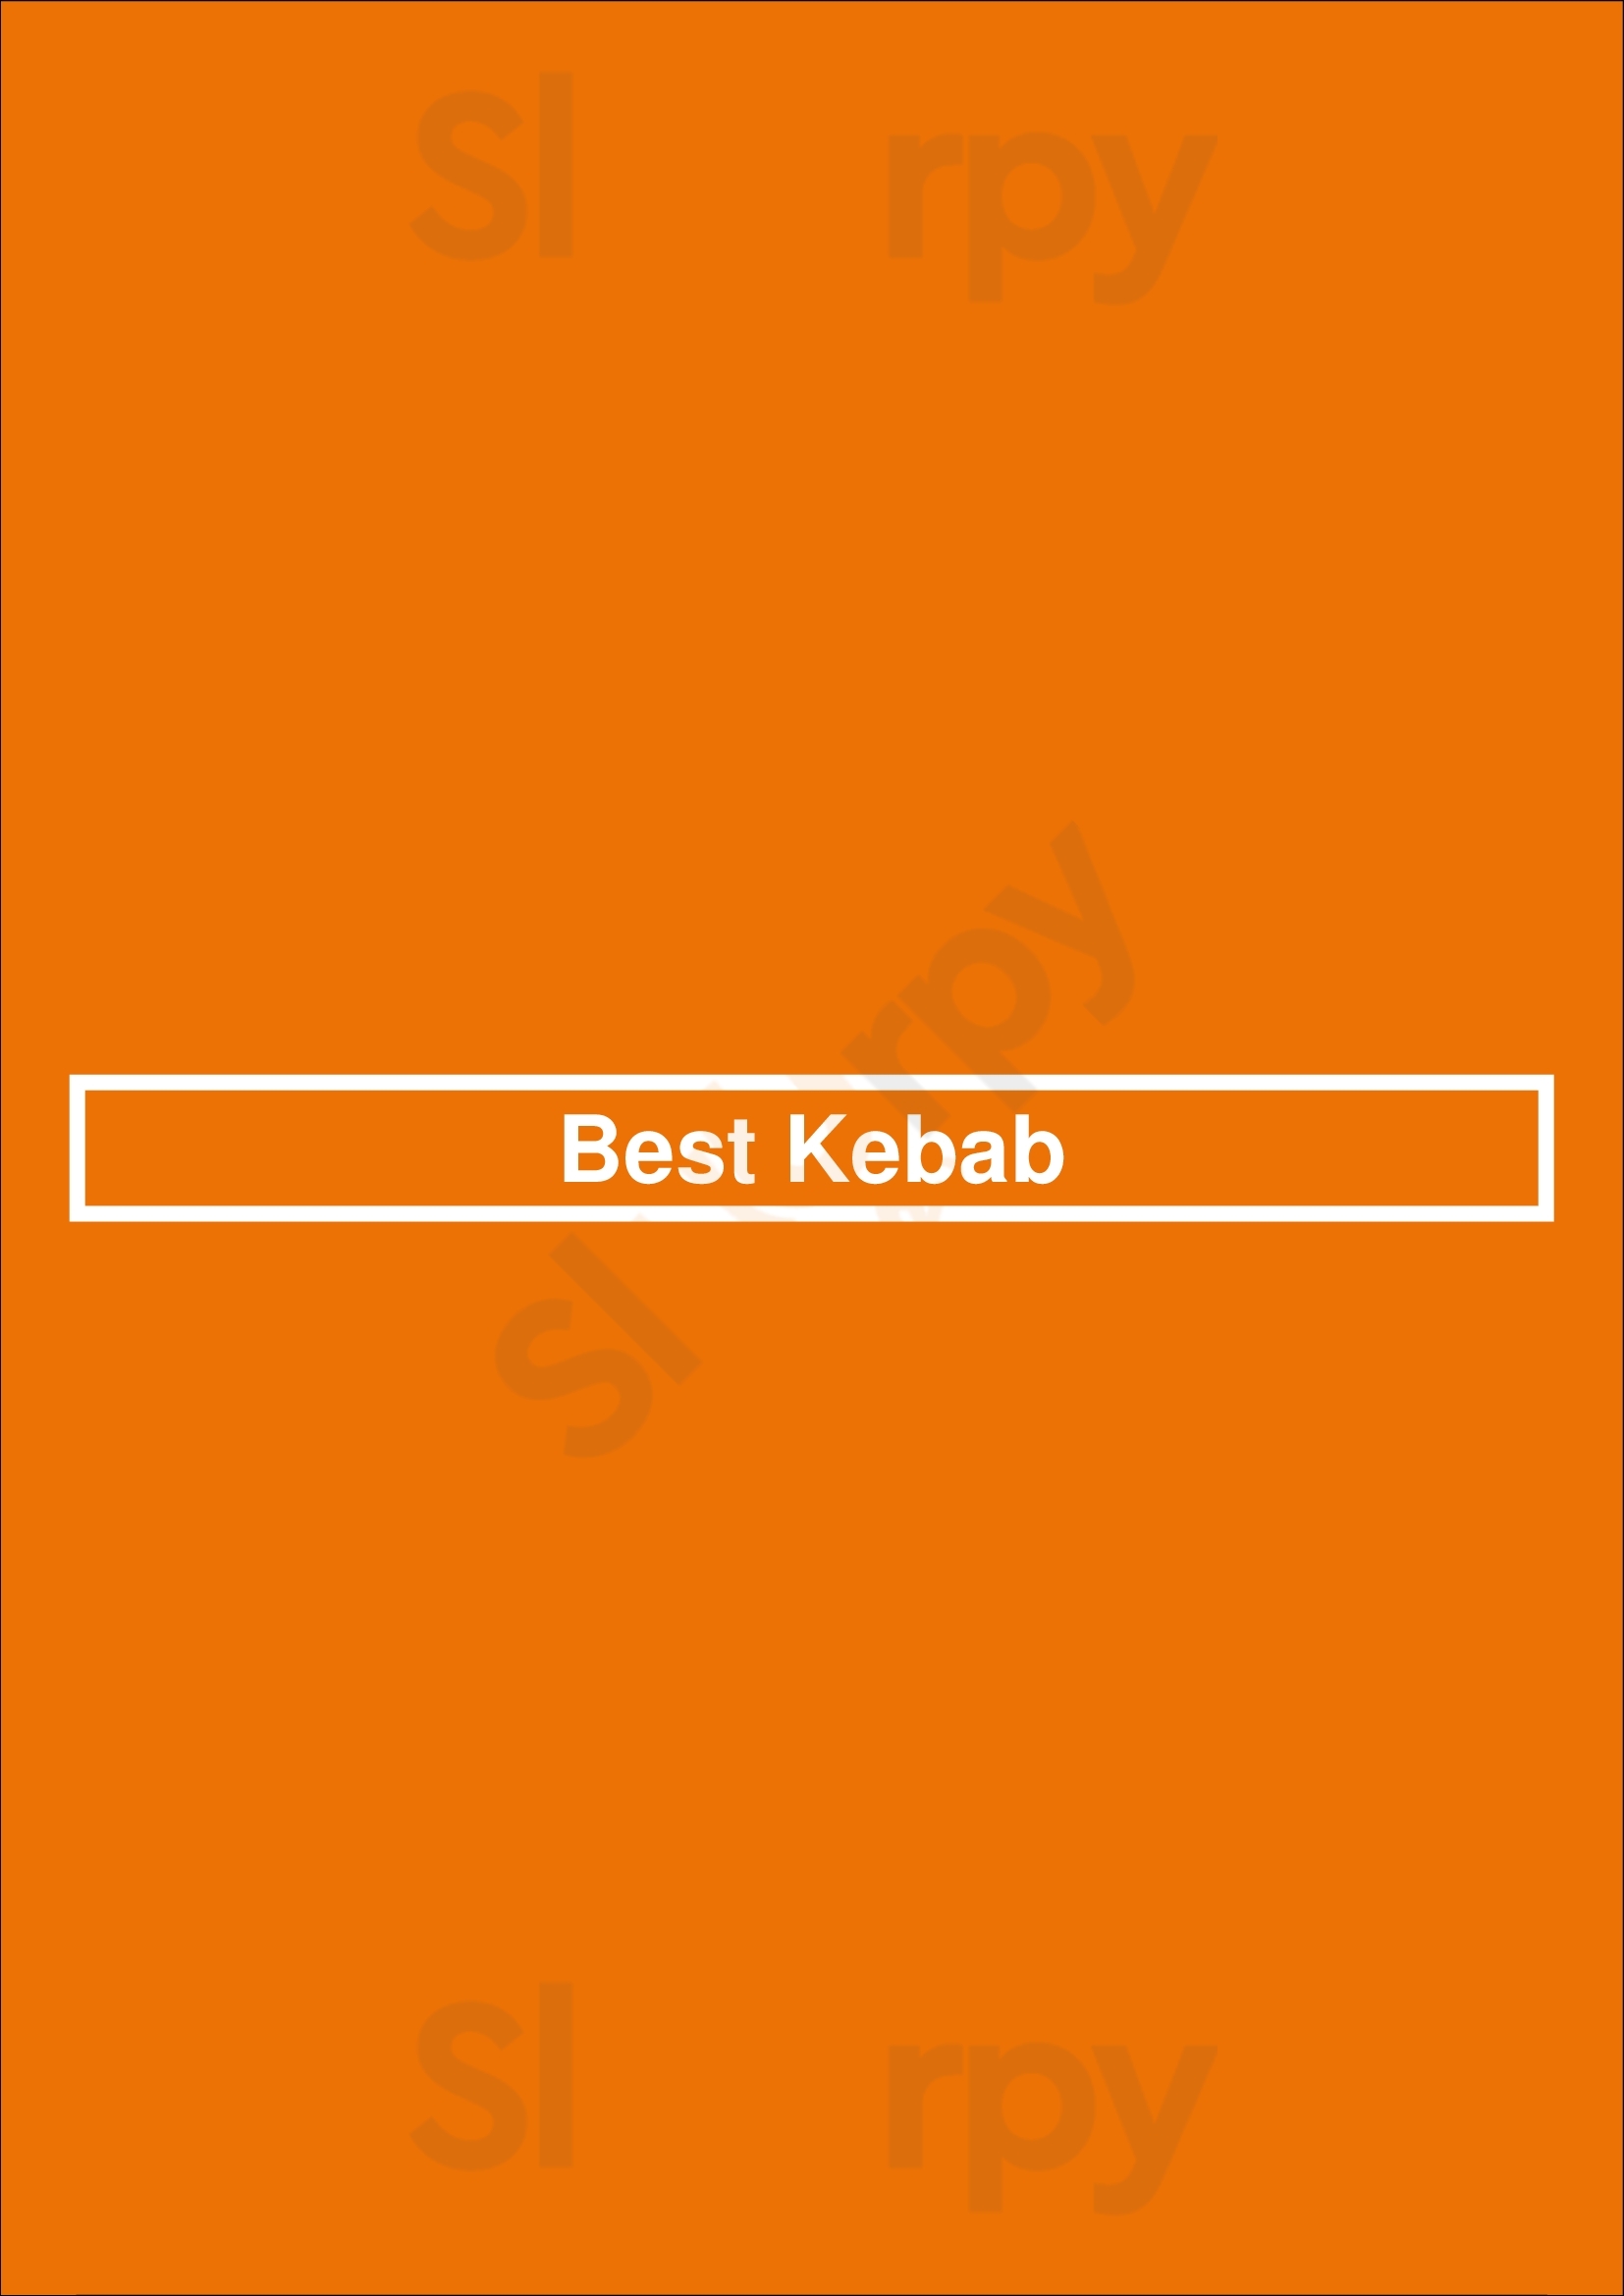 Best Kebab Northampton Menu - 1